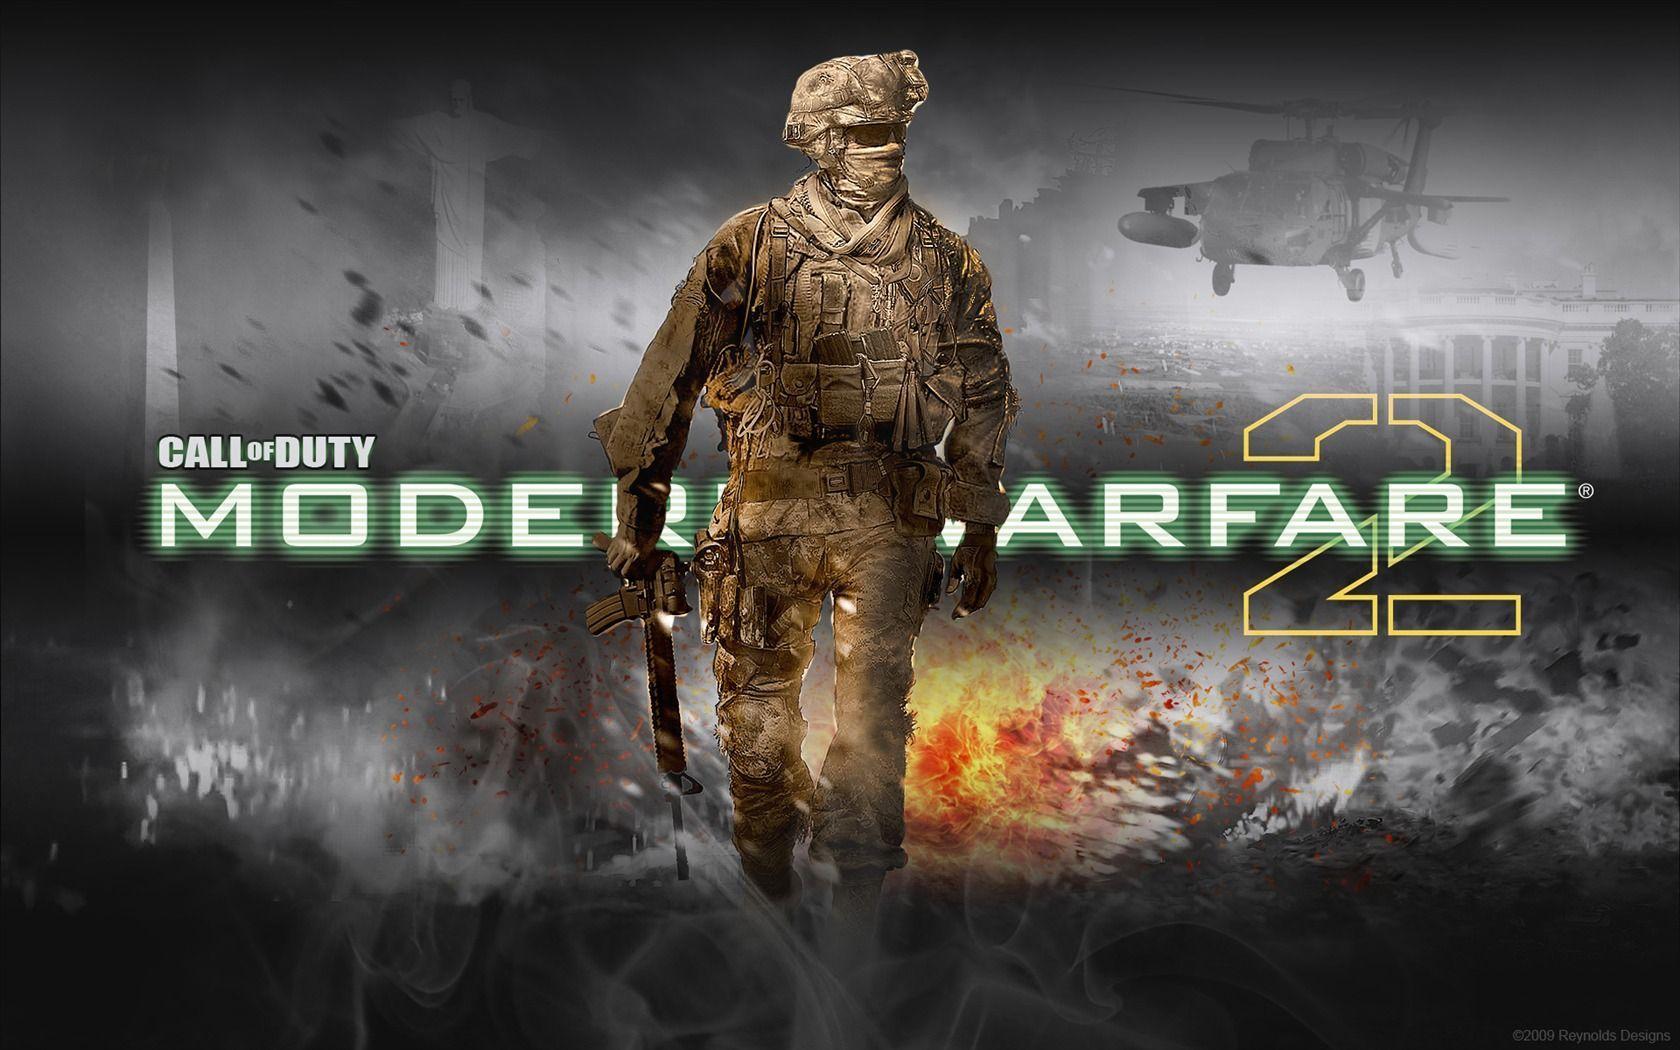 Call Of Duty Modern Warfare 2 Hd Best Wallpapers, Call Of Duty Modern Warfare 2, Game